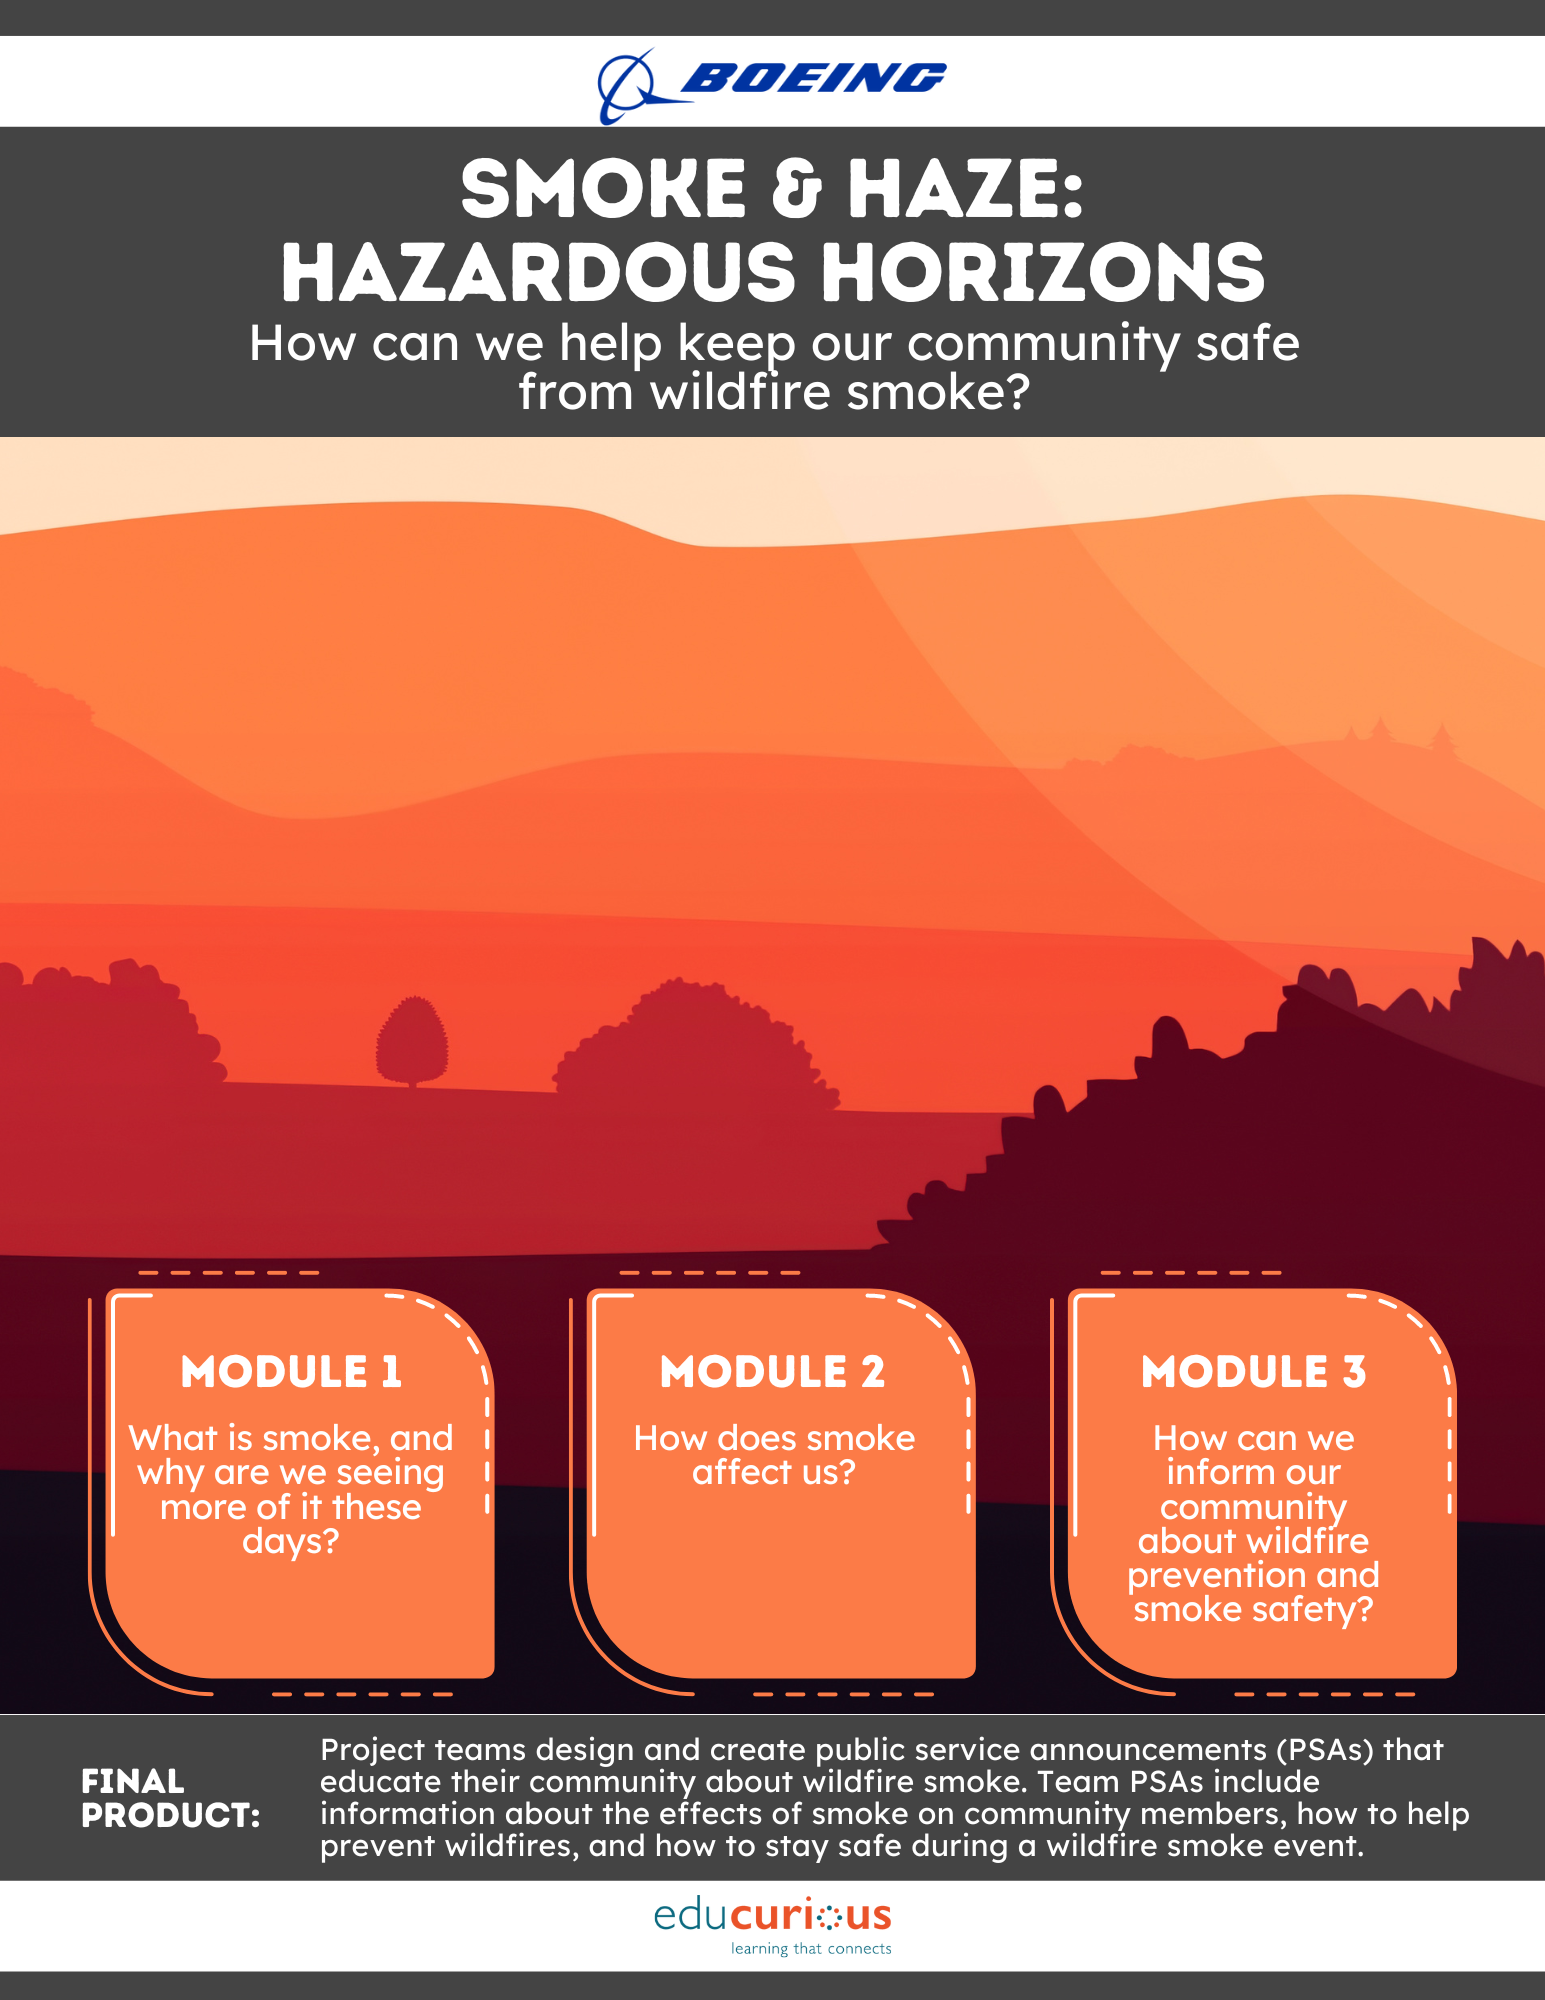 Smoke & Haze: Hazardous Horizons poster with three modules